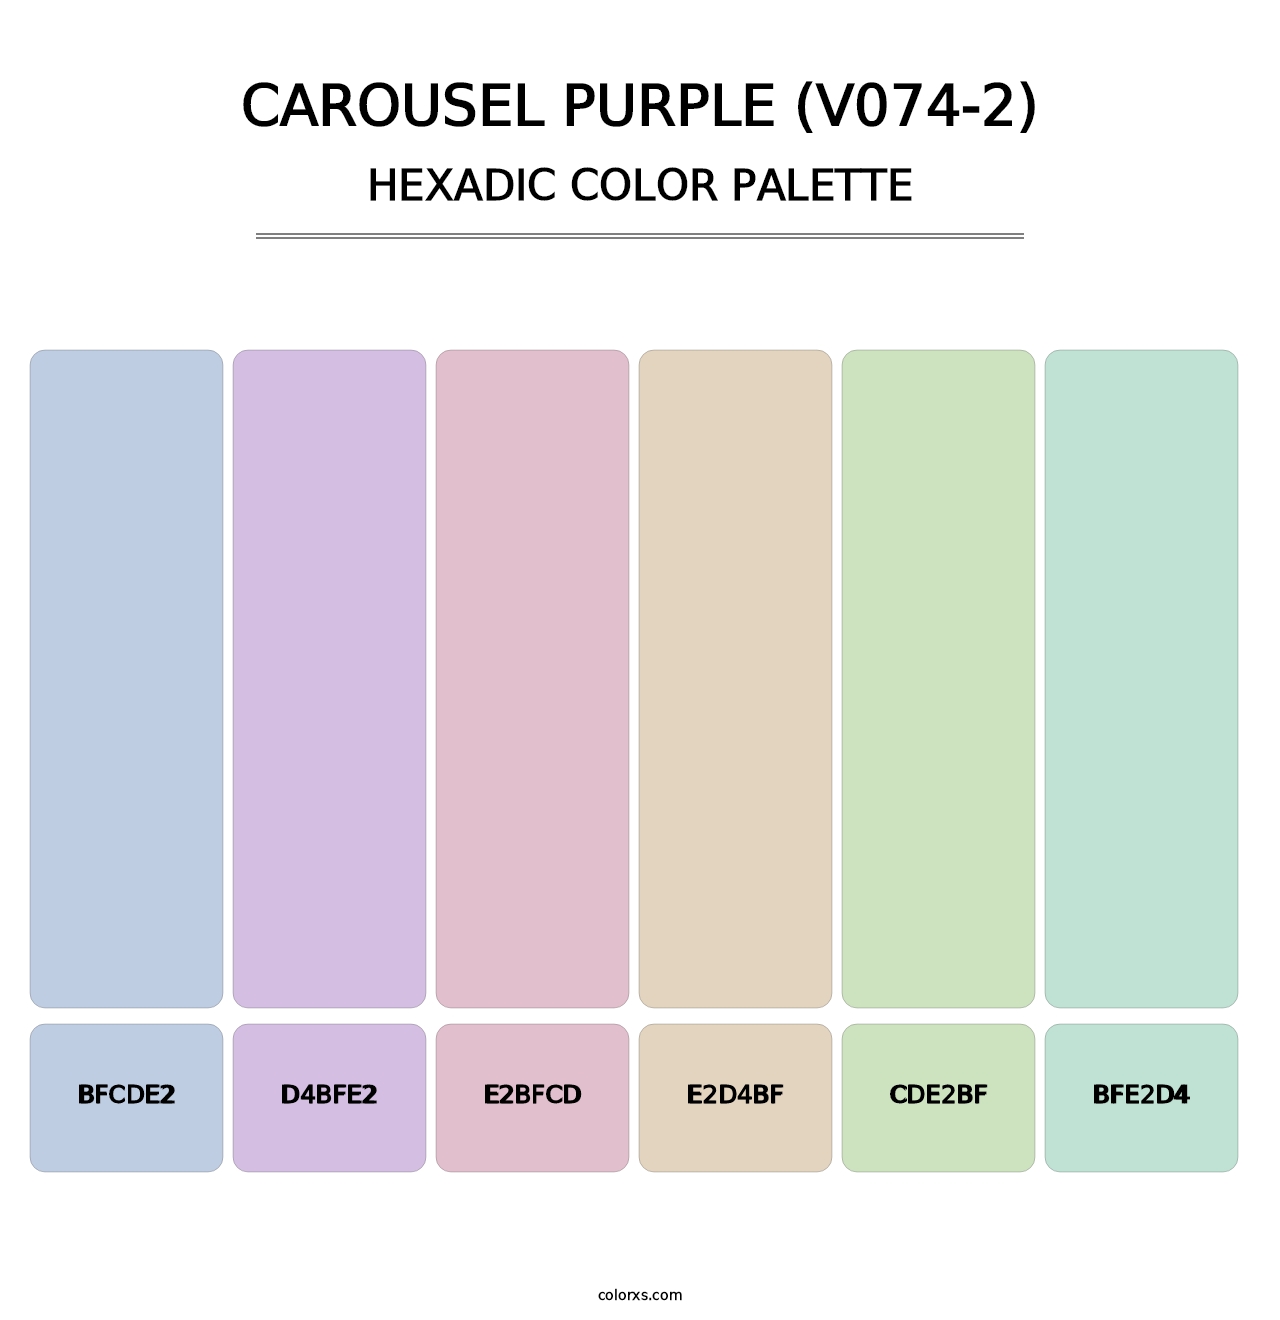 Carousel Purple (V074-2) - Hexadic Color Palette